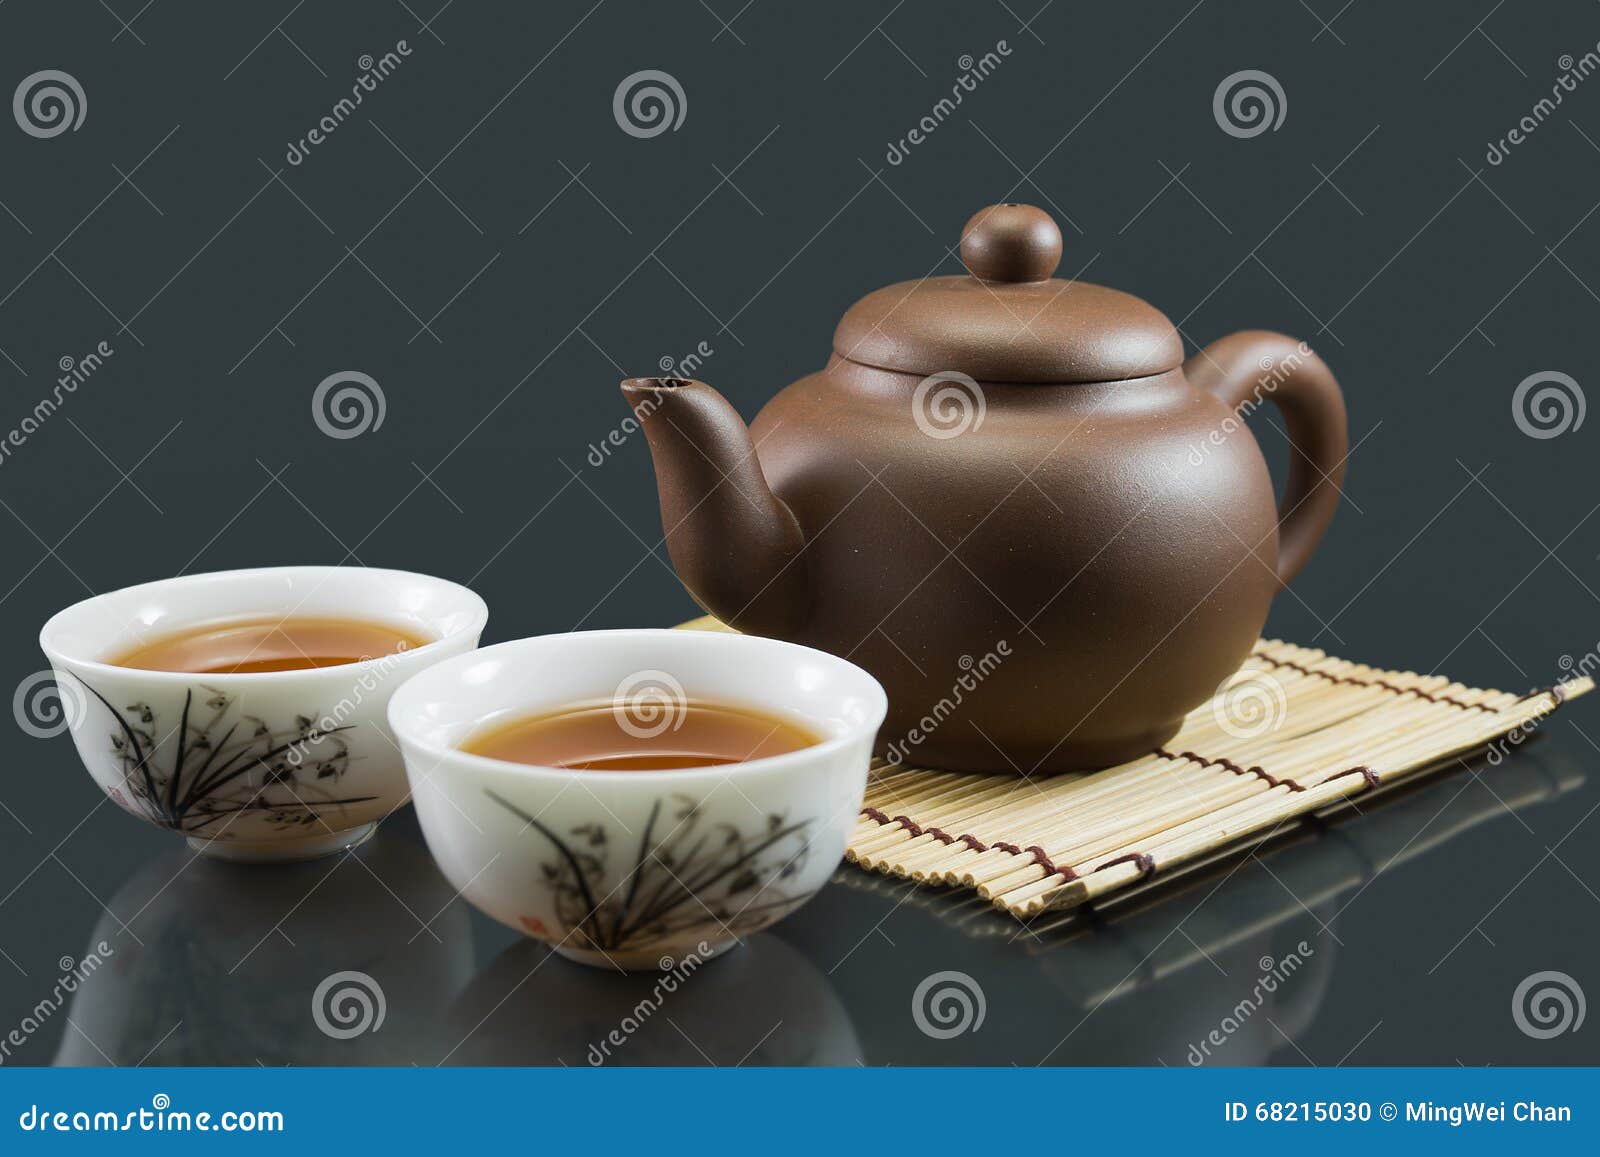 chinese kungfu tea